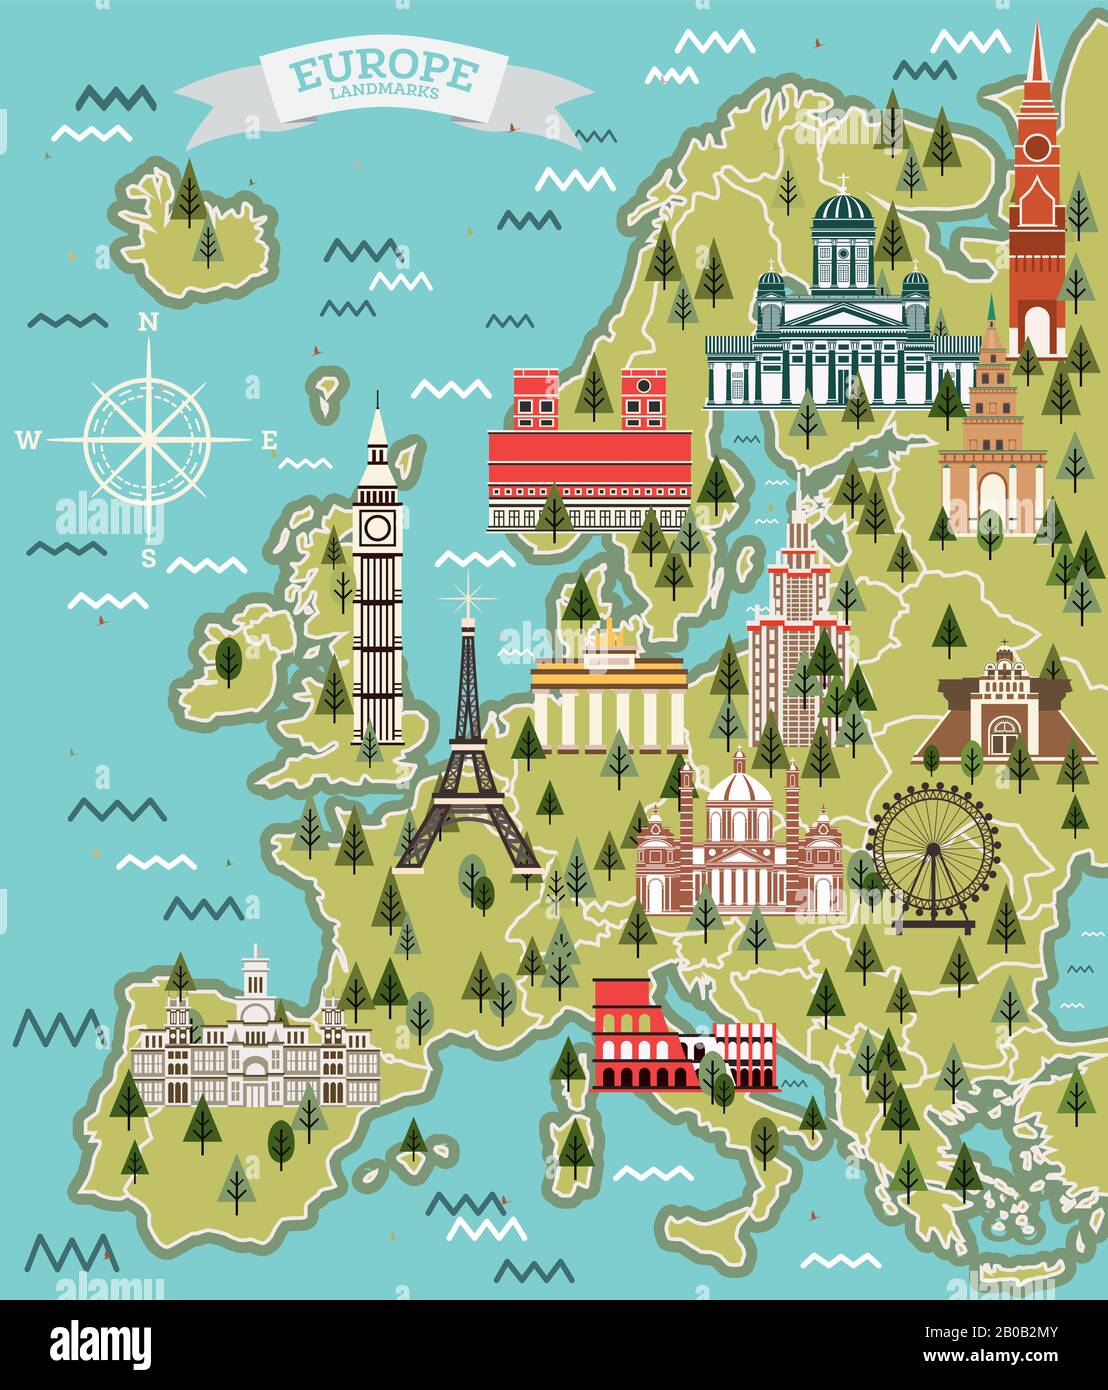 Europa Karte mit Berühmten Sehenswürdigkeiten. Vektorgrafiken. Reise- und Tourismuskonzept. Stock Vektor